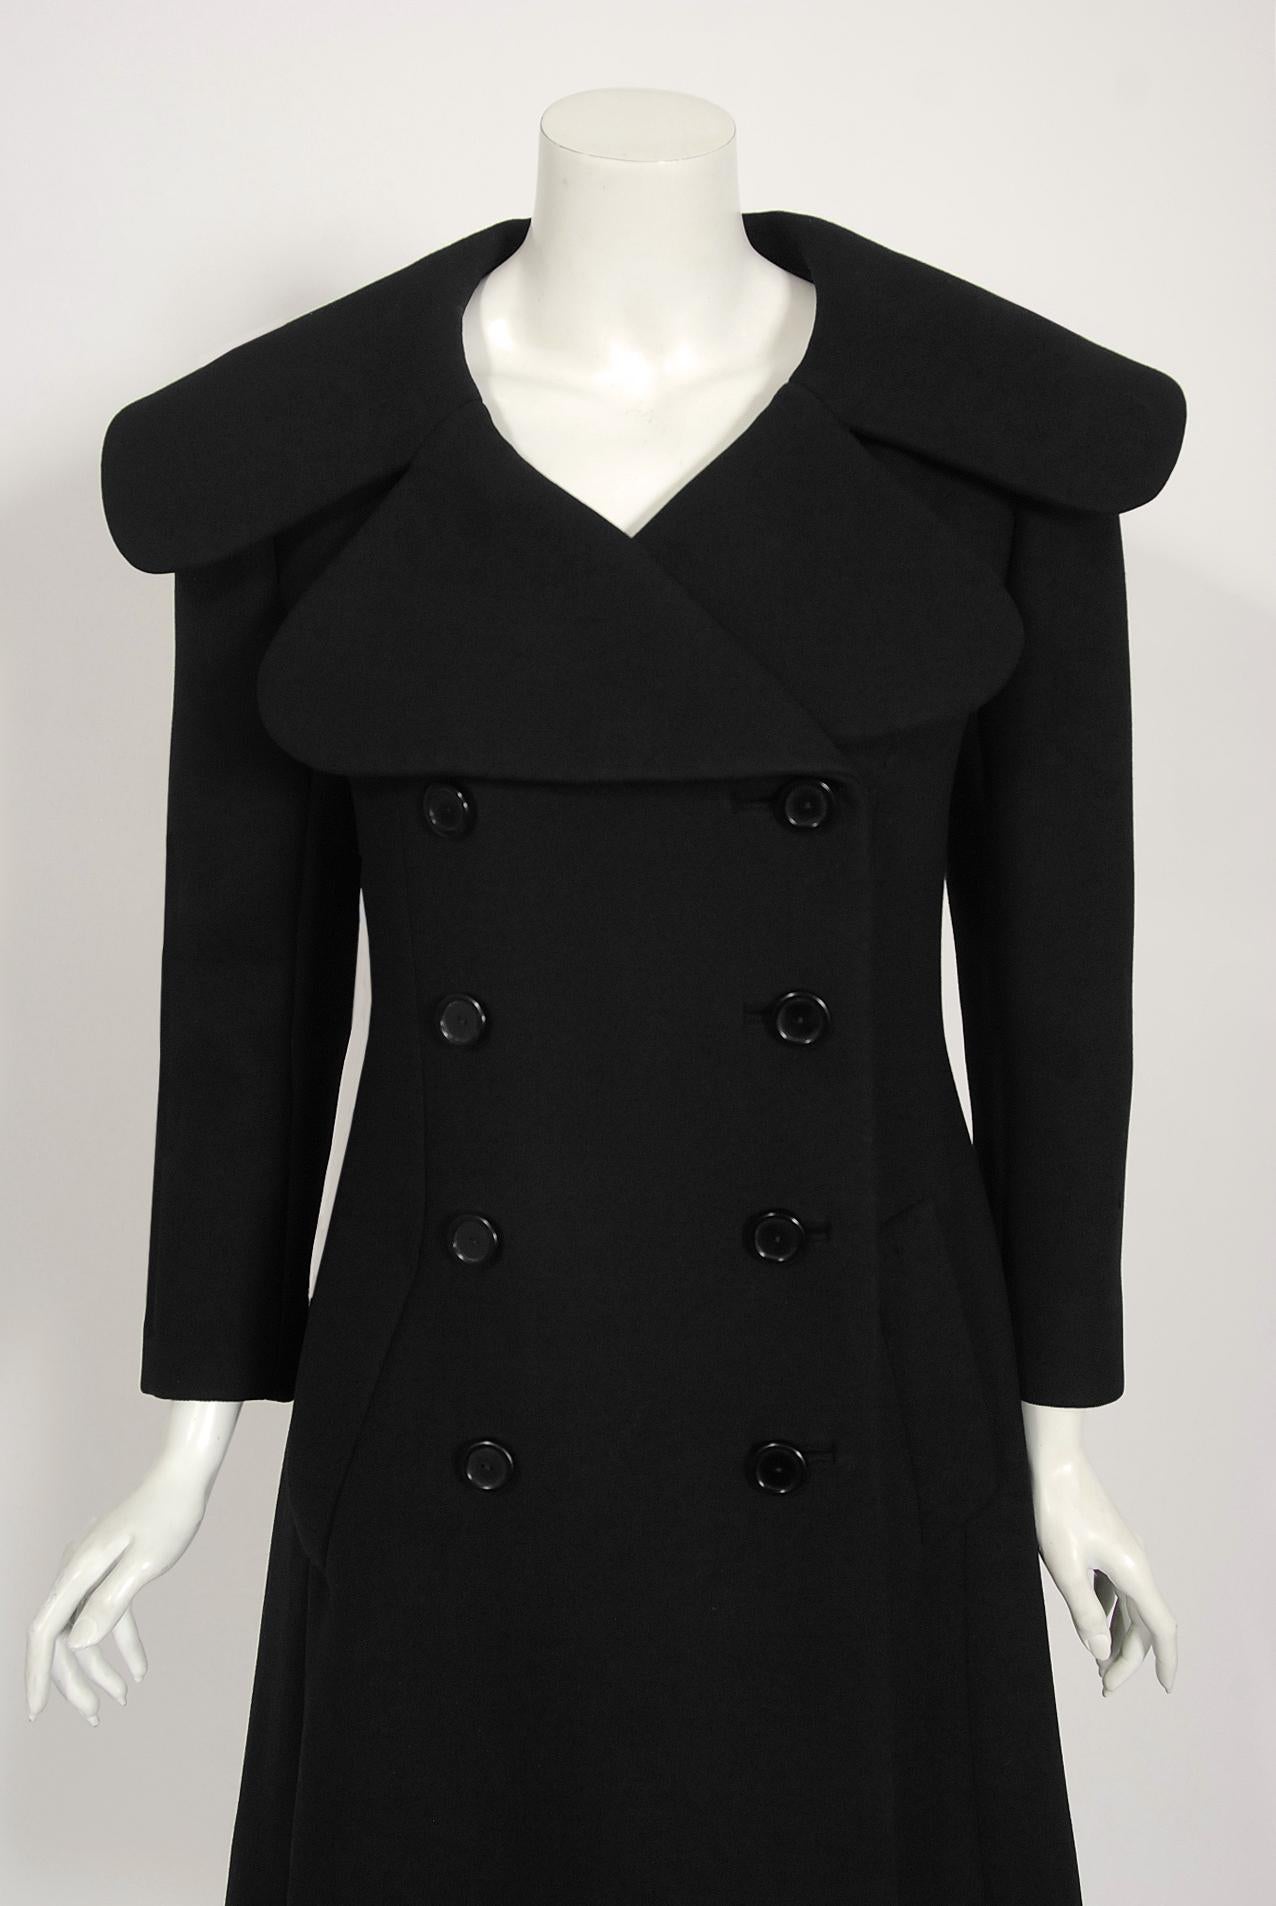 Dieser schicke Norman Norell-Mantel in zeitlosem Schwarz ist ein Beispiel für die für ihn typische Mischung aus Couture-Qualität und typisch amerikanischem Stil. Dieses wunderschöne Kleidungsstück aus der Herbst-Winter-Kollektion 1967-68 hat eine